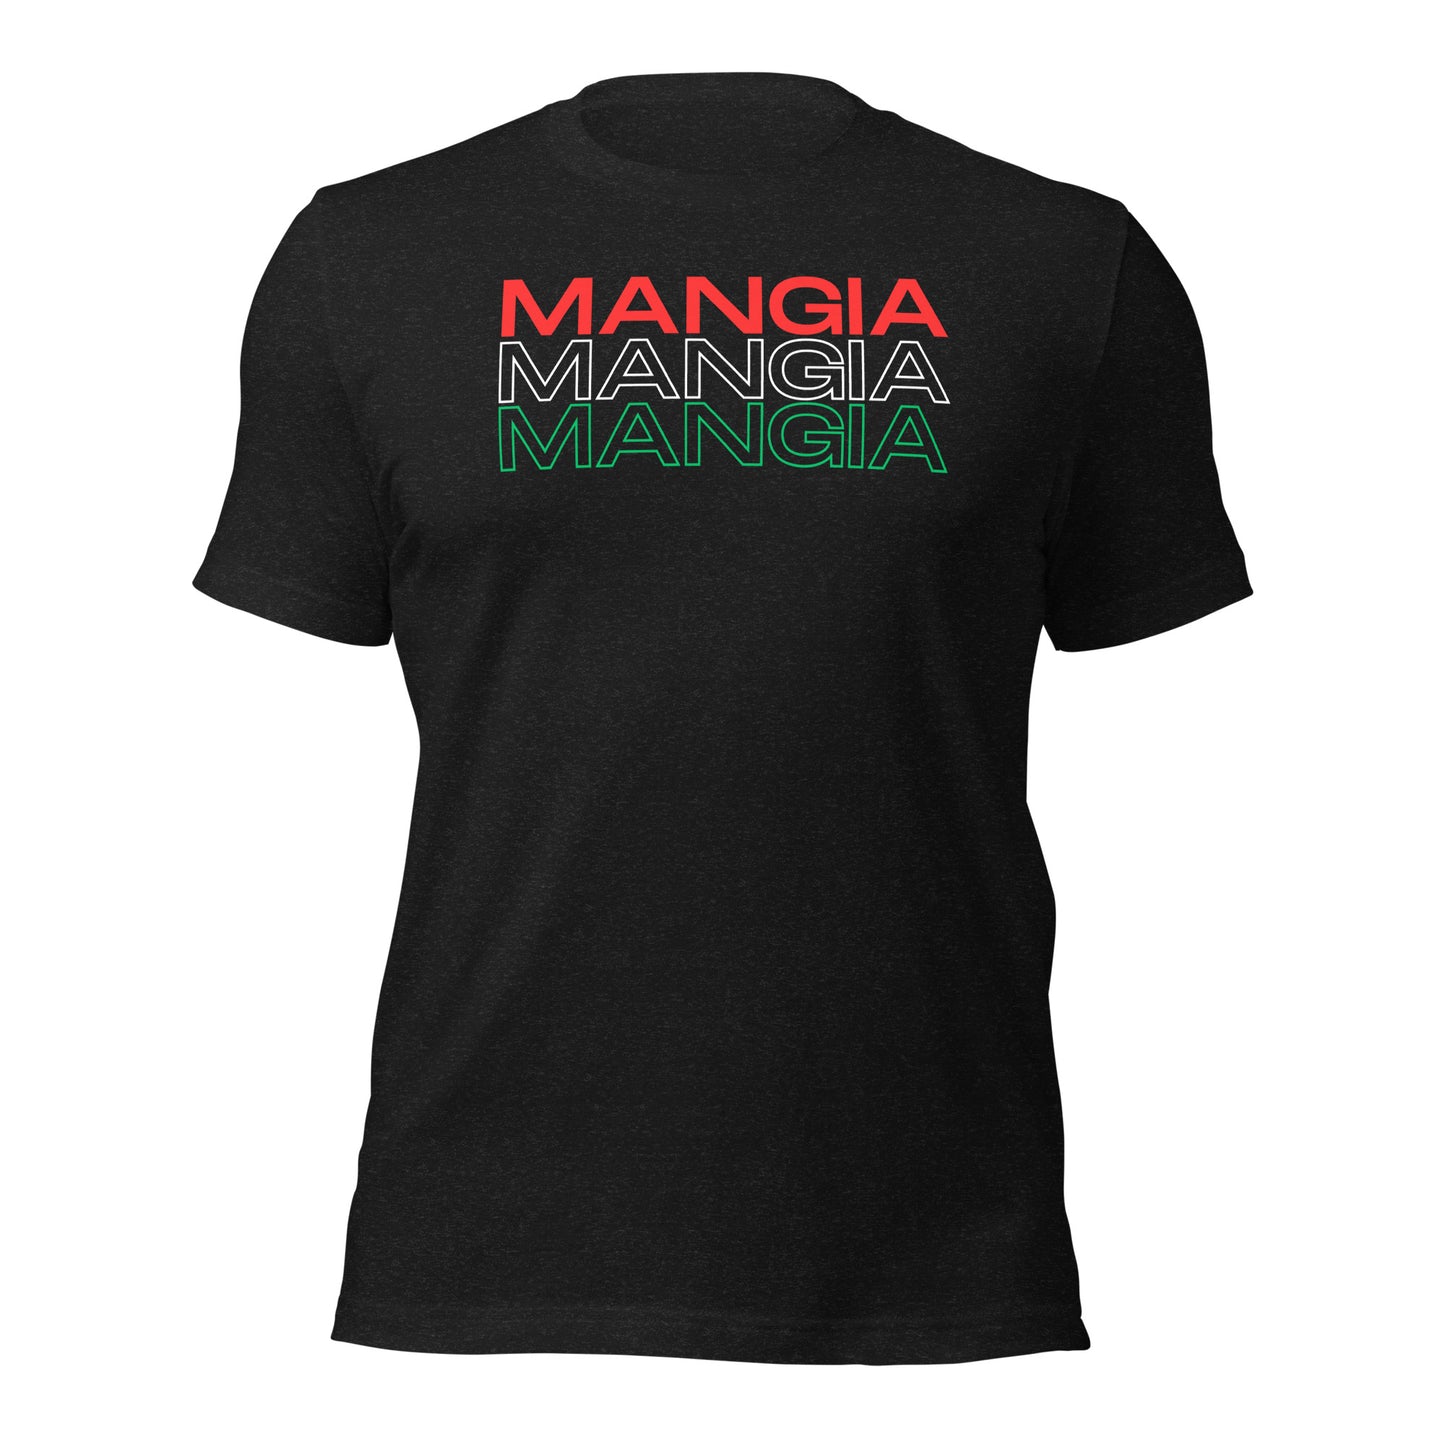 Mangia - Unisex t-shirt